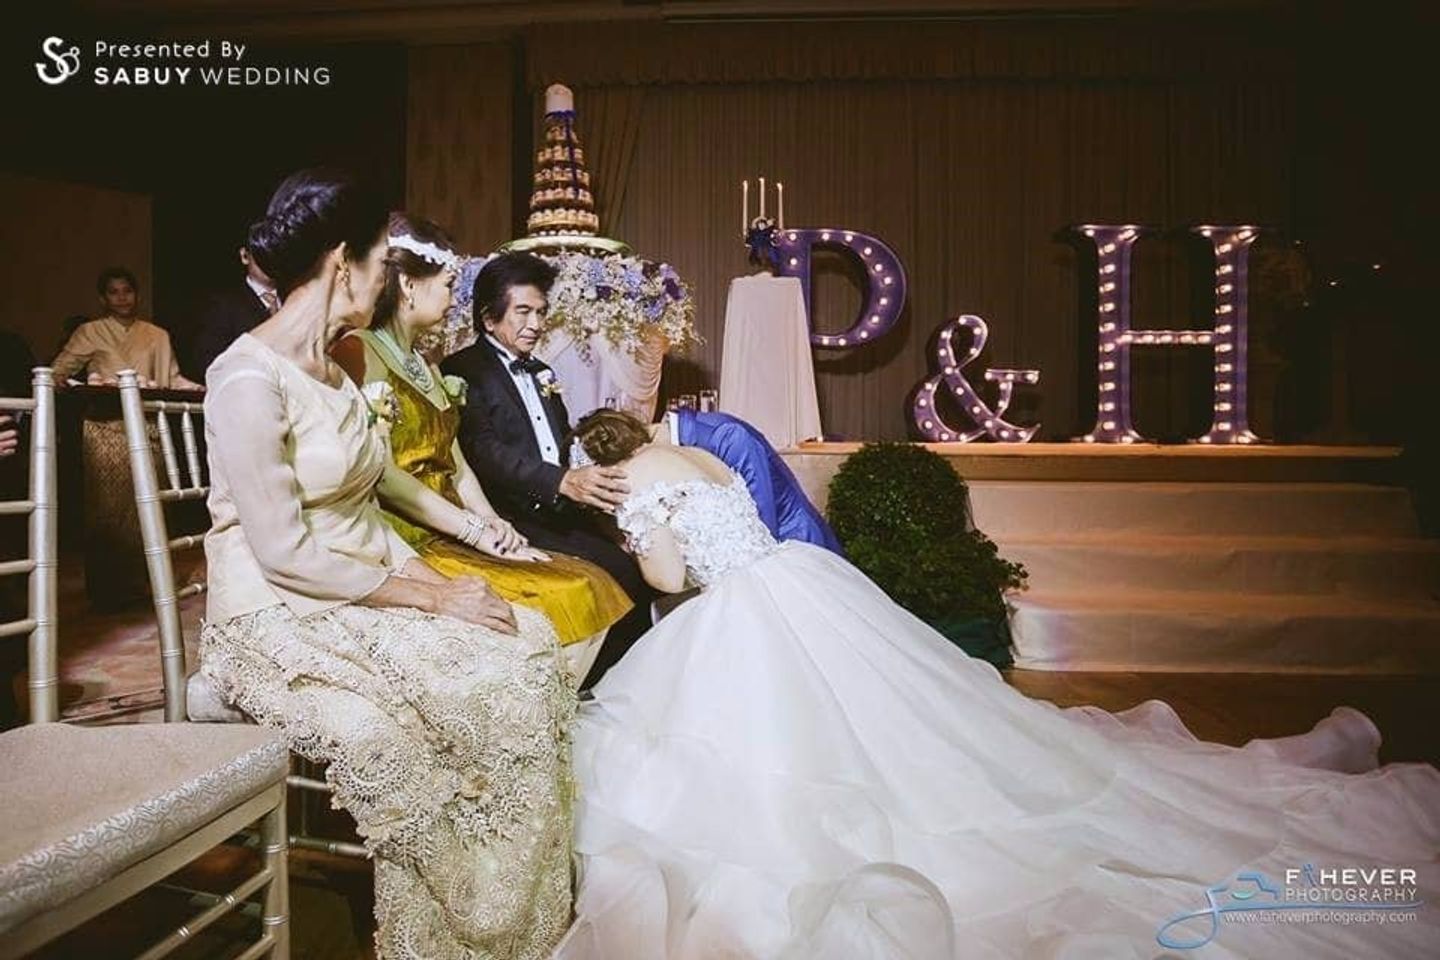 บ่าวสาว,ชุดบ่าวสาว,ชุดเจ้าสาว,ชุดเจ้าบ่าว,พิธีแต่งงาน,ครอบครัวบ่าวสาว,รูปงานแต่ง,ตกแต่งงานแต่ง รีวิวงานแต่ง สวยสะดุดตาแสนเย้ายวน ชวนย้อนยุคในสไตล์ Retro @The Peninsula Bangkok